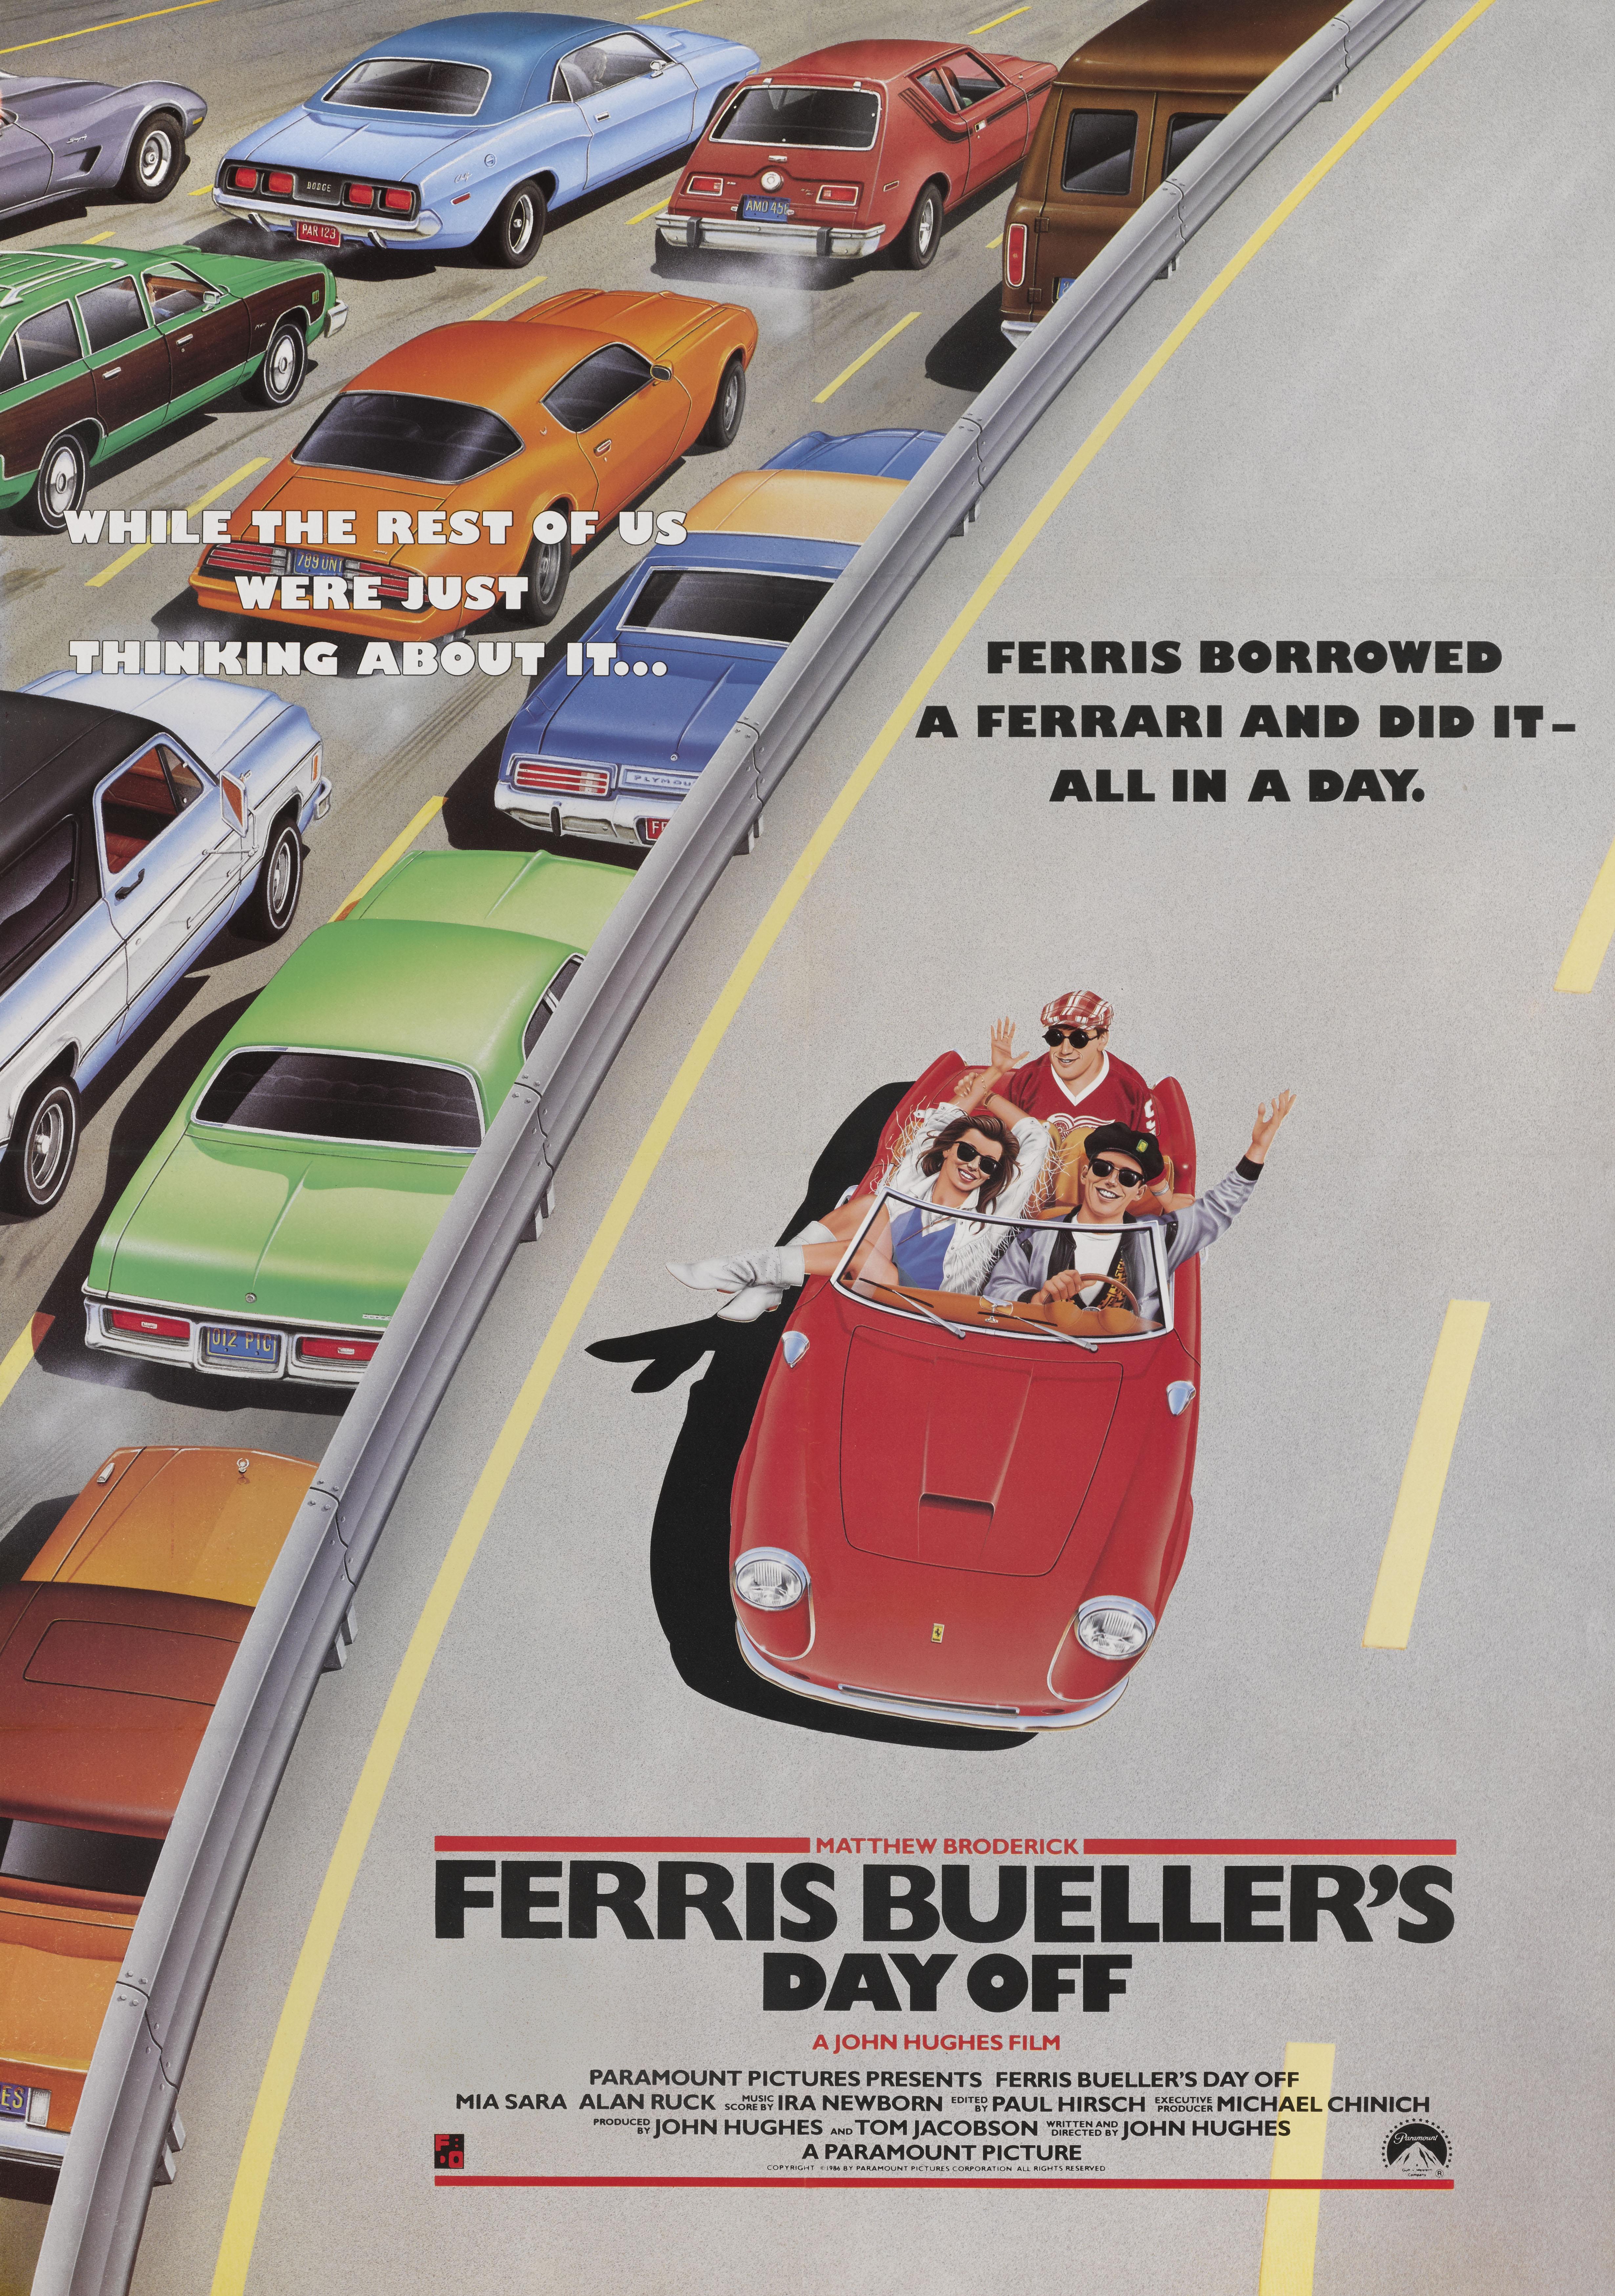 British Ferris Bueller's Day Off